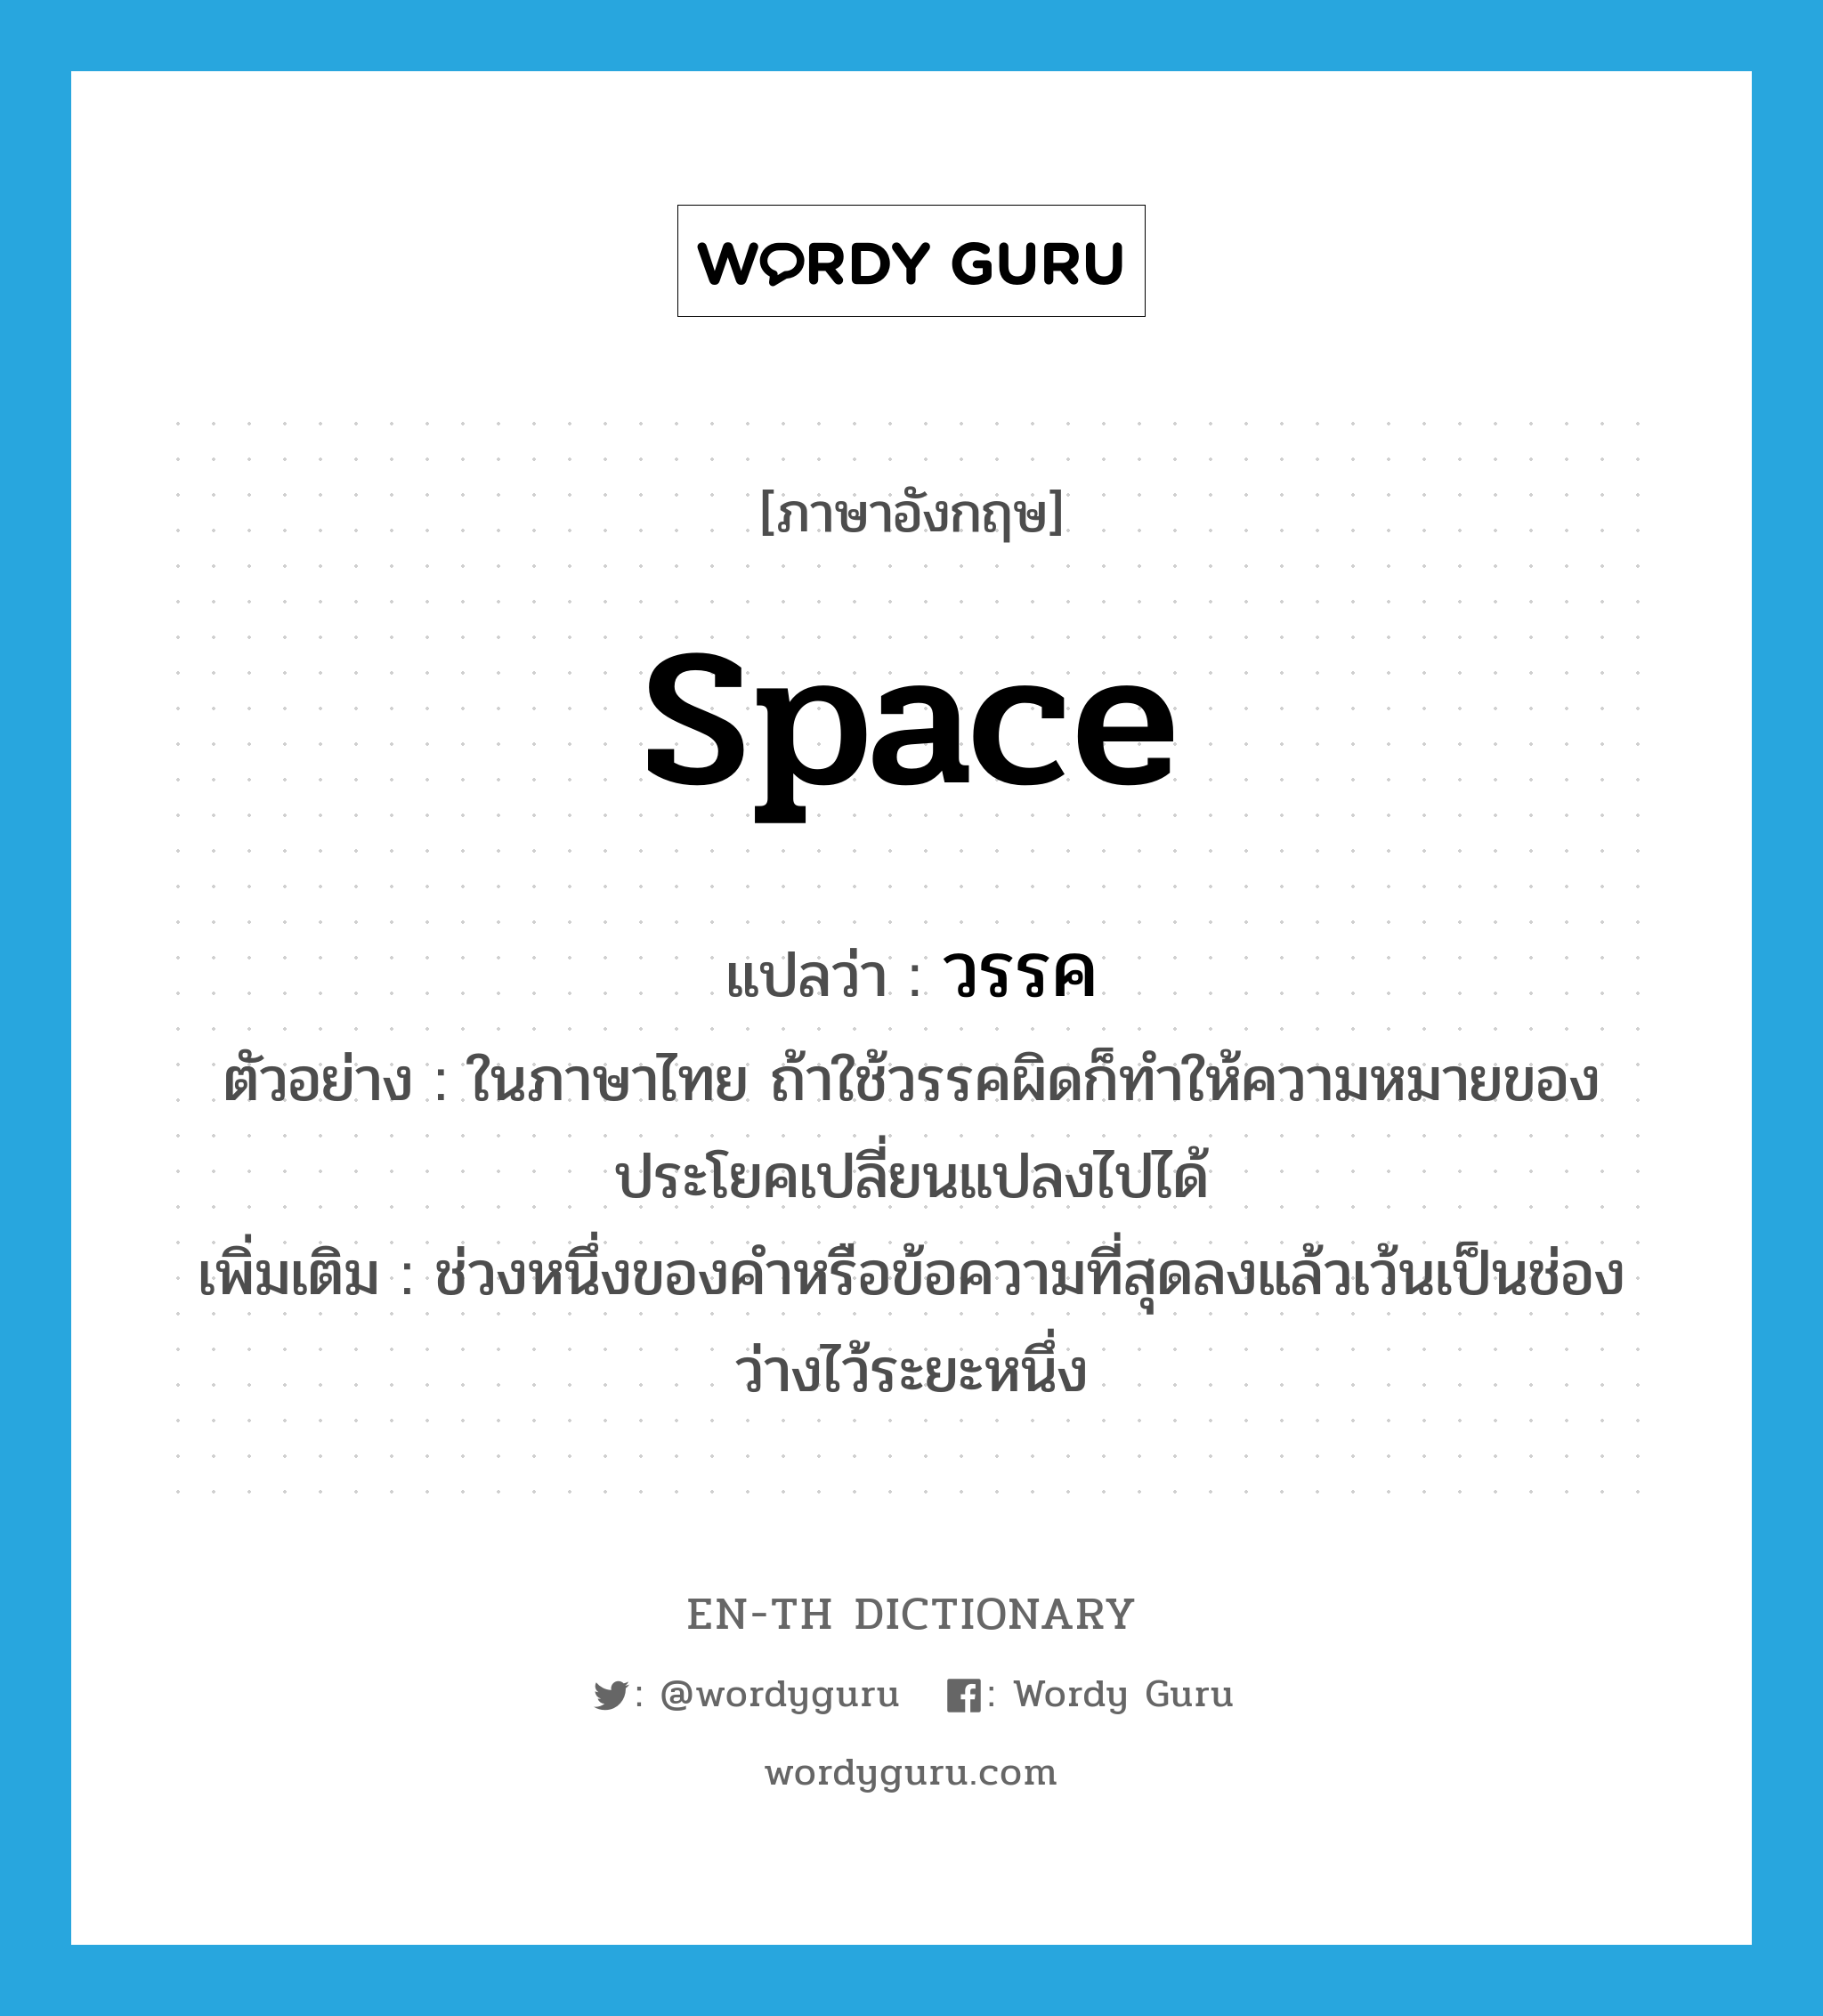 space แปลว่า?, คำศัพท์ภาษาอังกฤษ space แปลว่า วรรค ประเภท N ตัวอย่าง ในภาษาไทย ถ้าใช้วรรคผิดก็ทำให้ความหมายของประโยคเปลี่ยนแปลงไปได้ เพิ่มเติม ช่วงหนึ่งของคำหรือข้อความที่สุดลงแล้วเว้นเป็นช่องว่างไว้ระยะหนึ่ง หมวด N